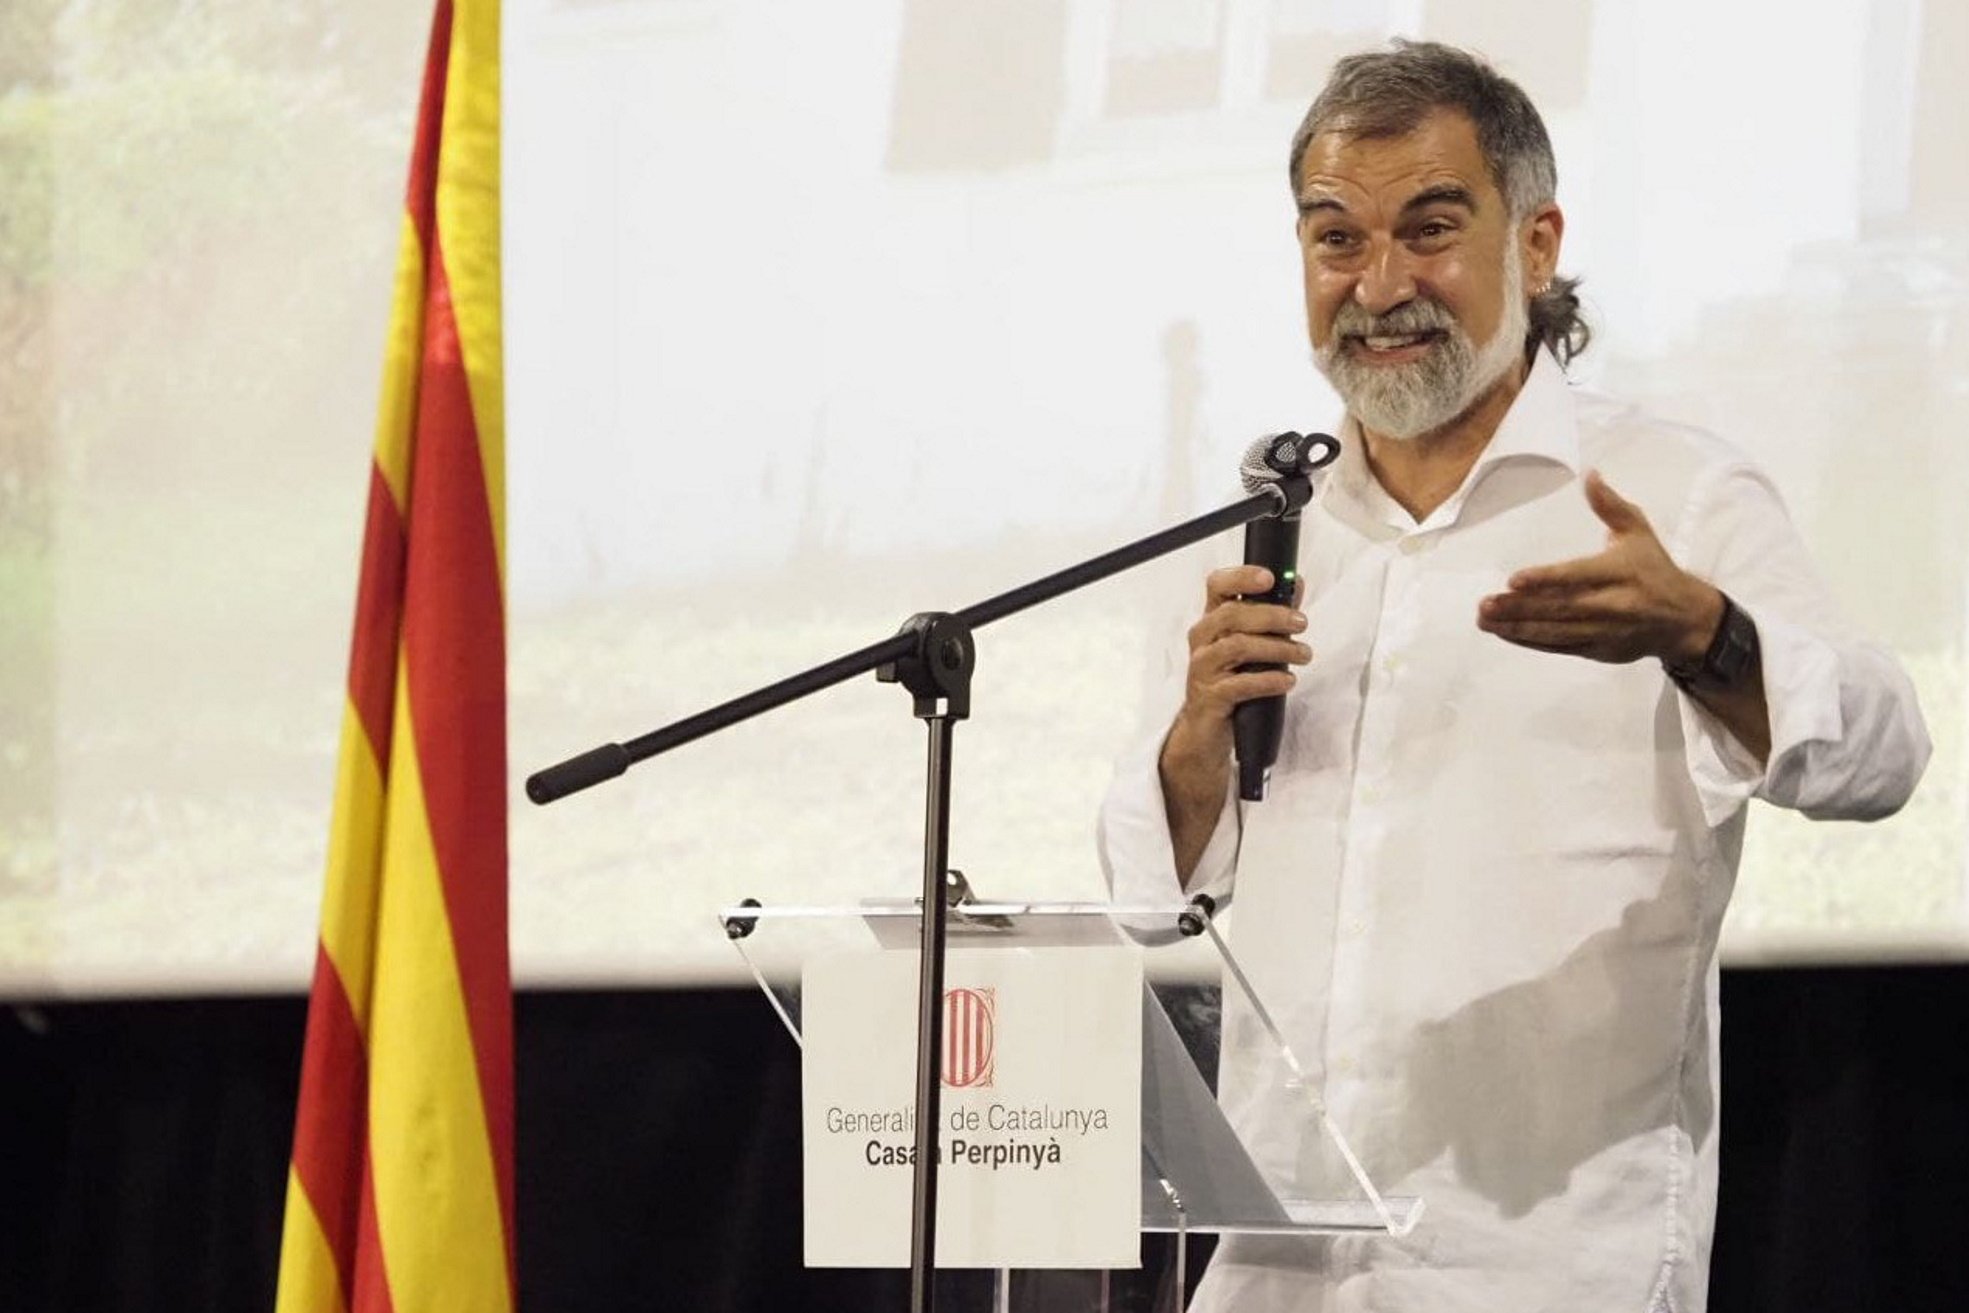 Cuixart pide desde la Catalunya Nord movilizarse y presionar a los políticos